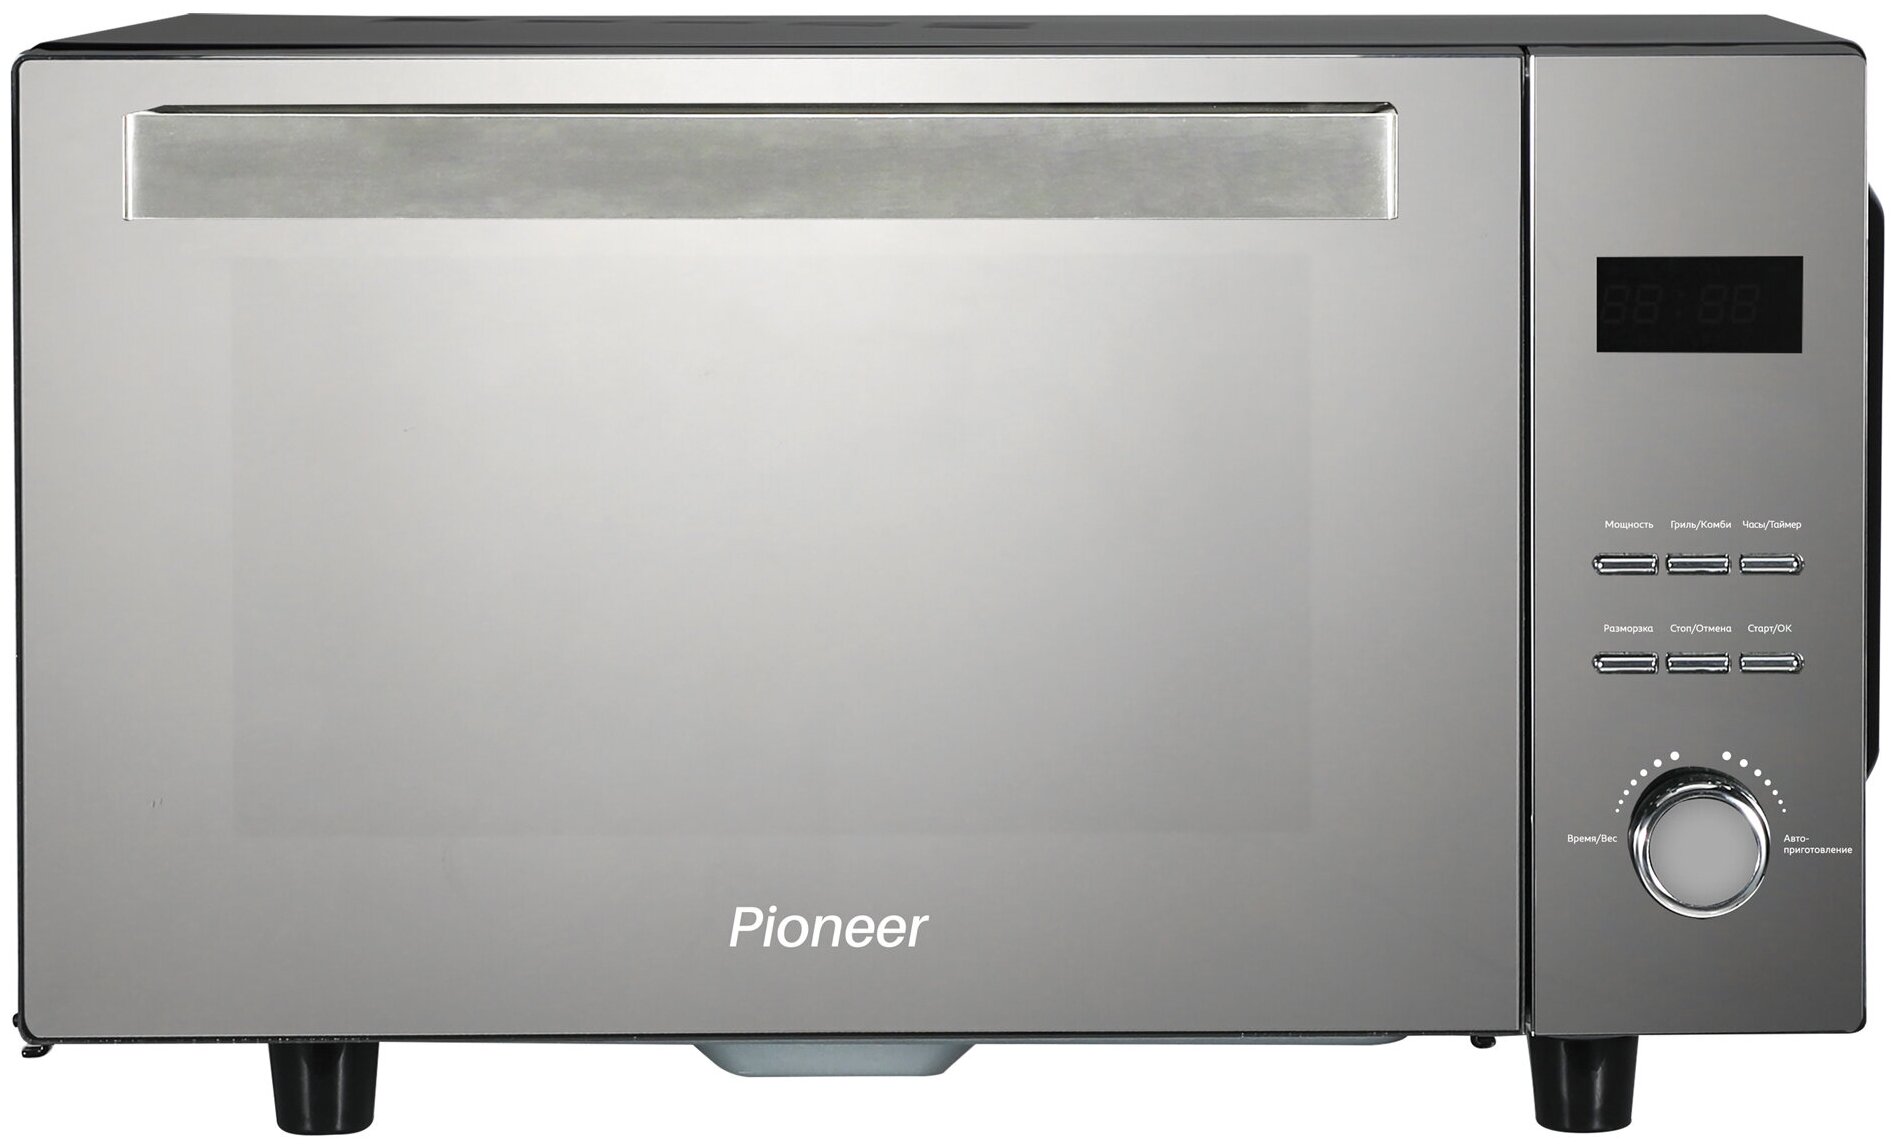 Микроволновая печь Pioneer MW360S 23 л с авторазмораживанием, грилем, таймером и часами, 5 уровней мощности, 800 Вт